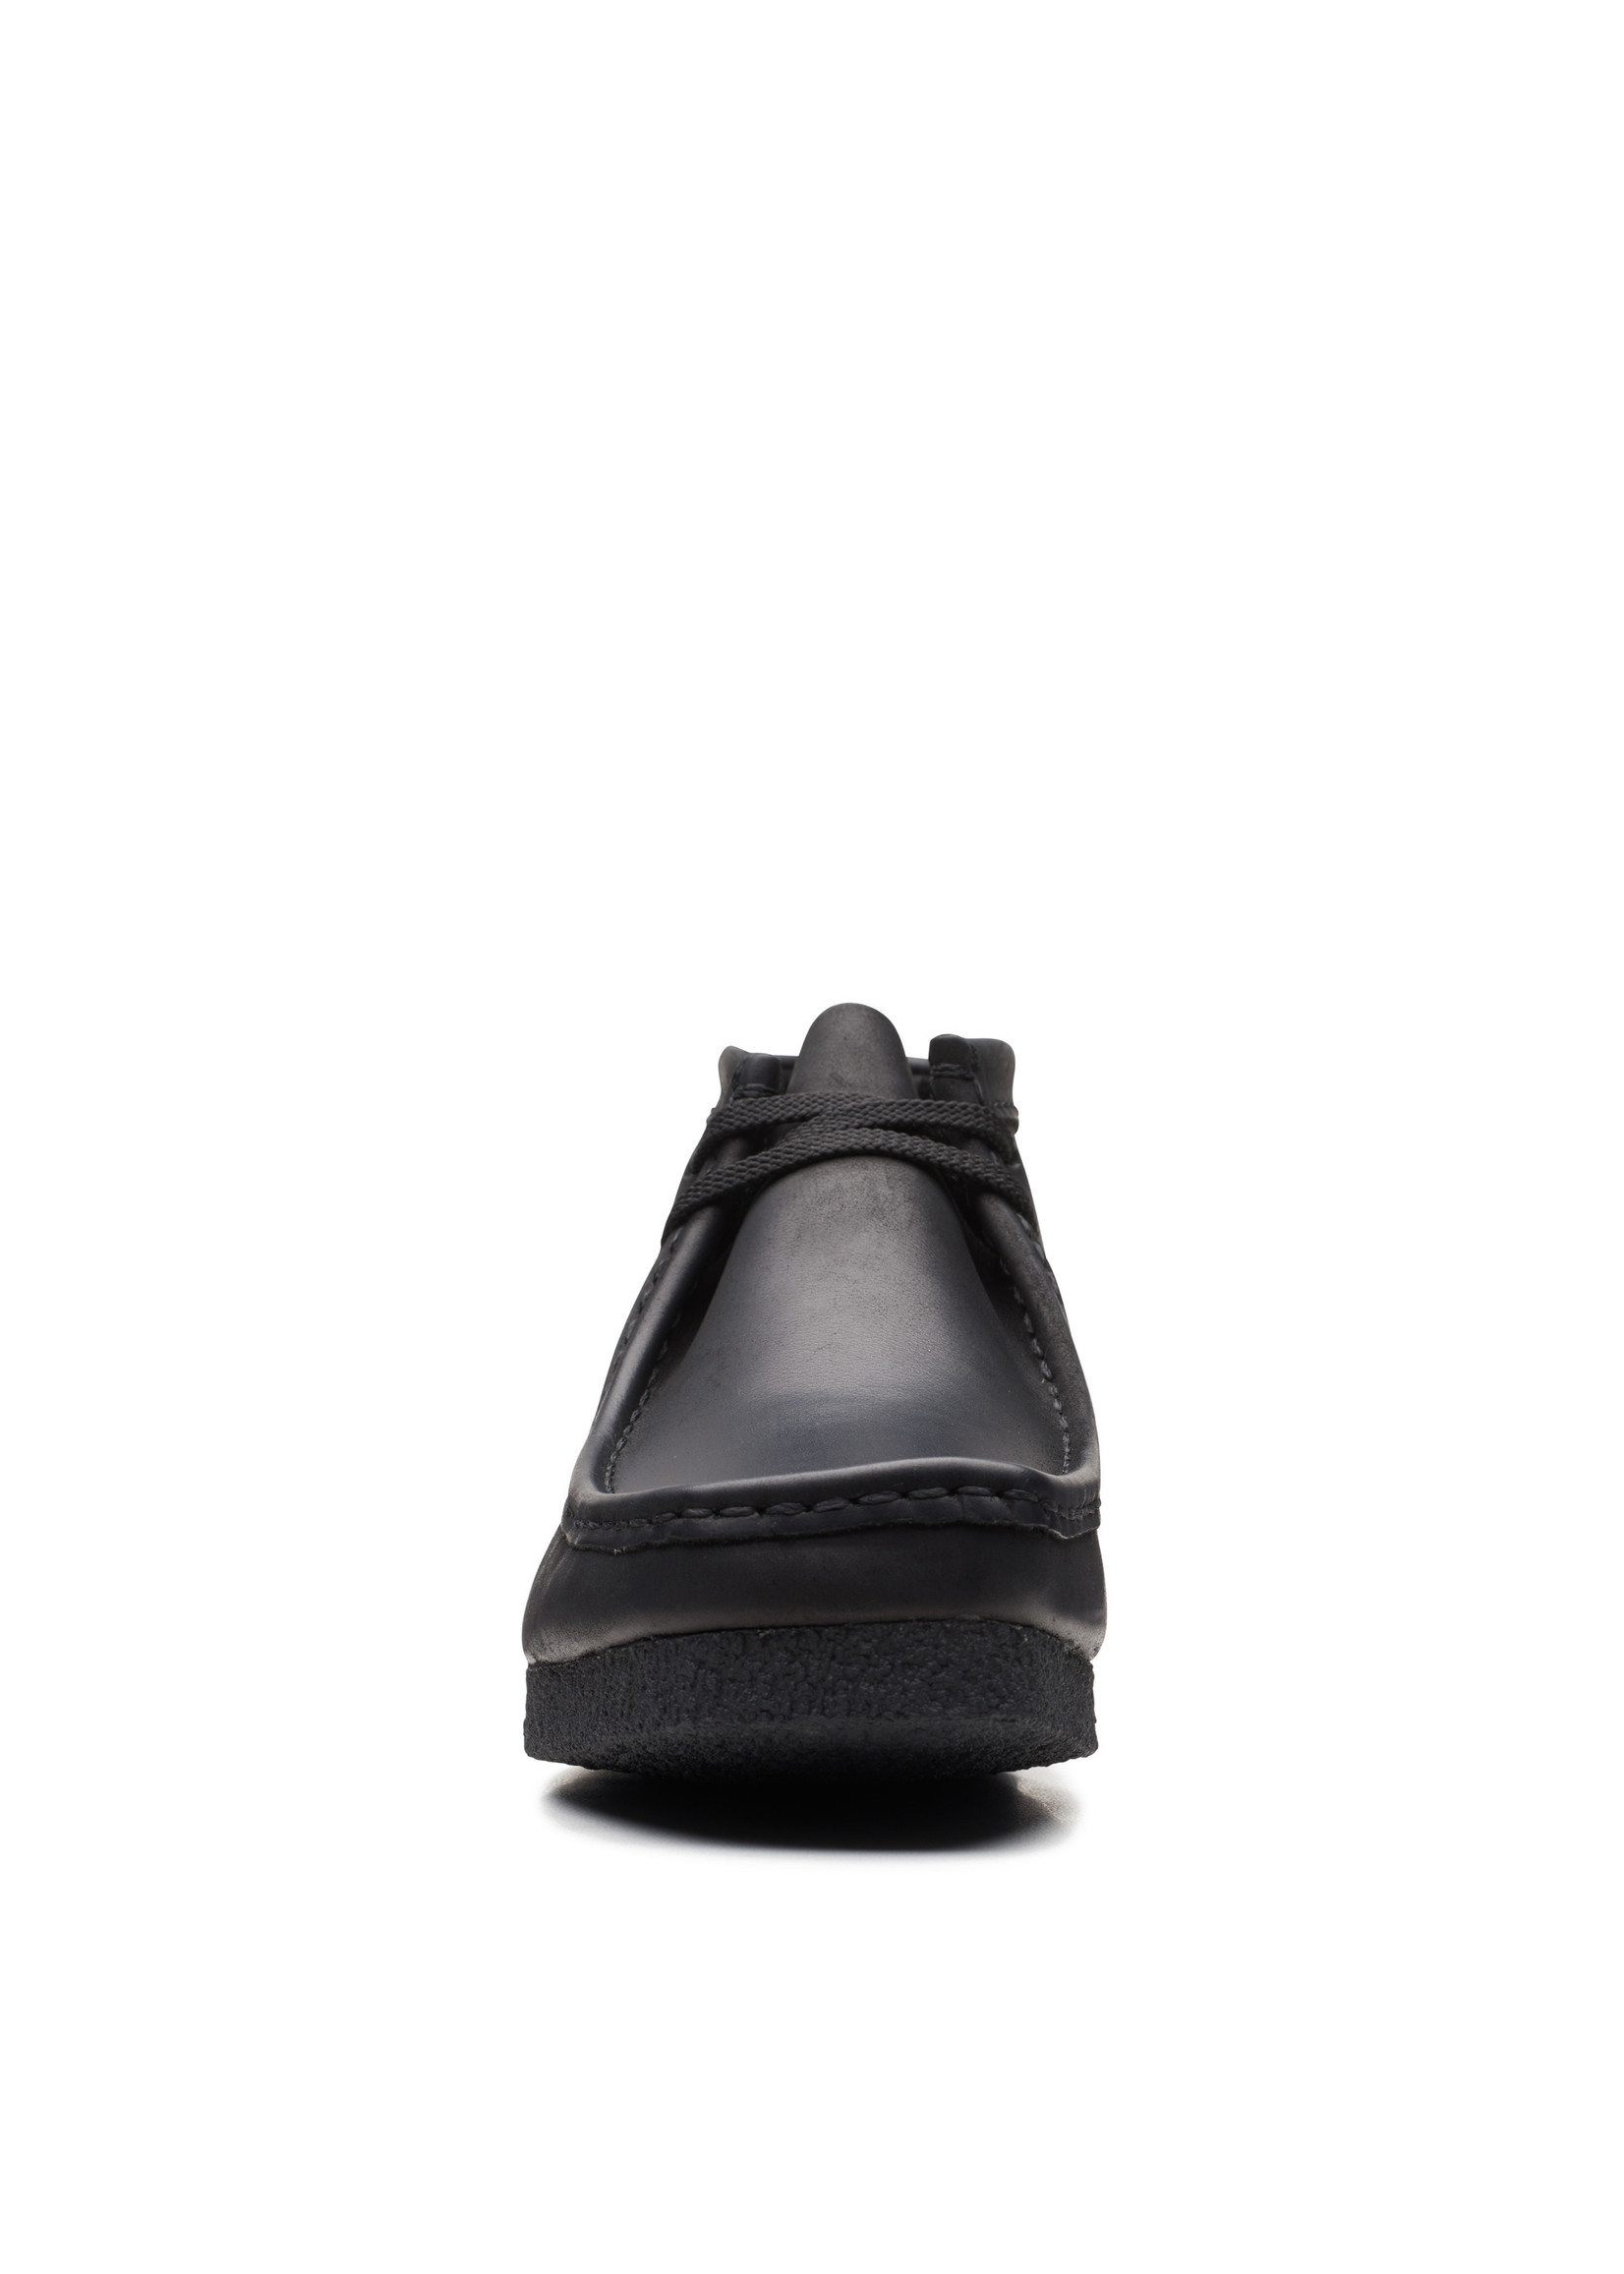 Clarks Men's Shacre Boot 26159440 (Rubber Bottom) Black Leather